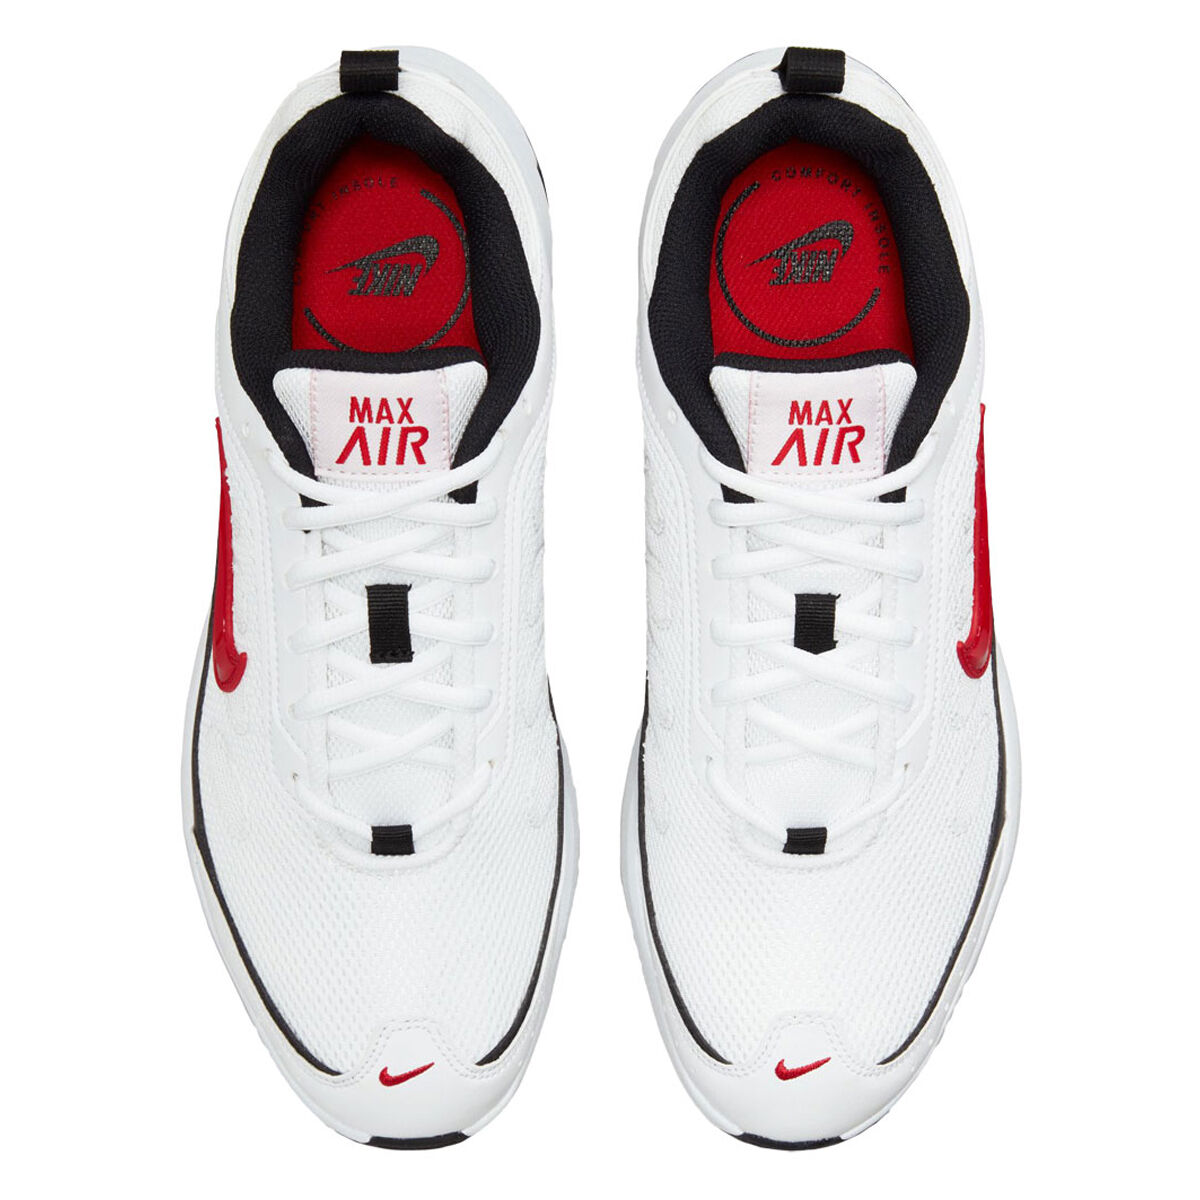 Nike Air Max AP Mens Casual Shoes, White/Black, rebel_hi-res